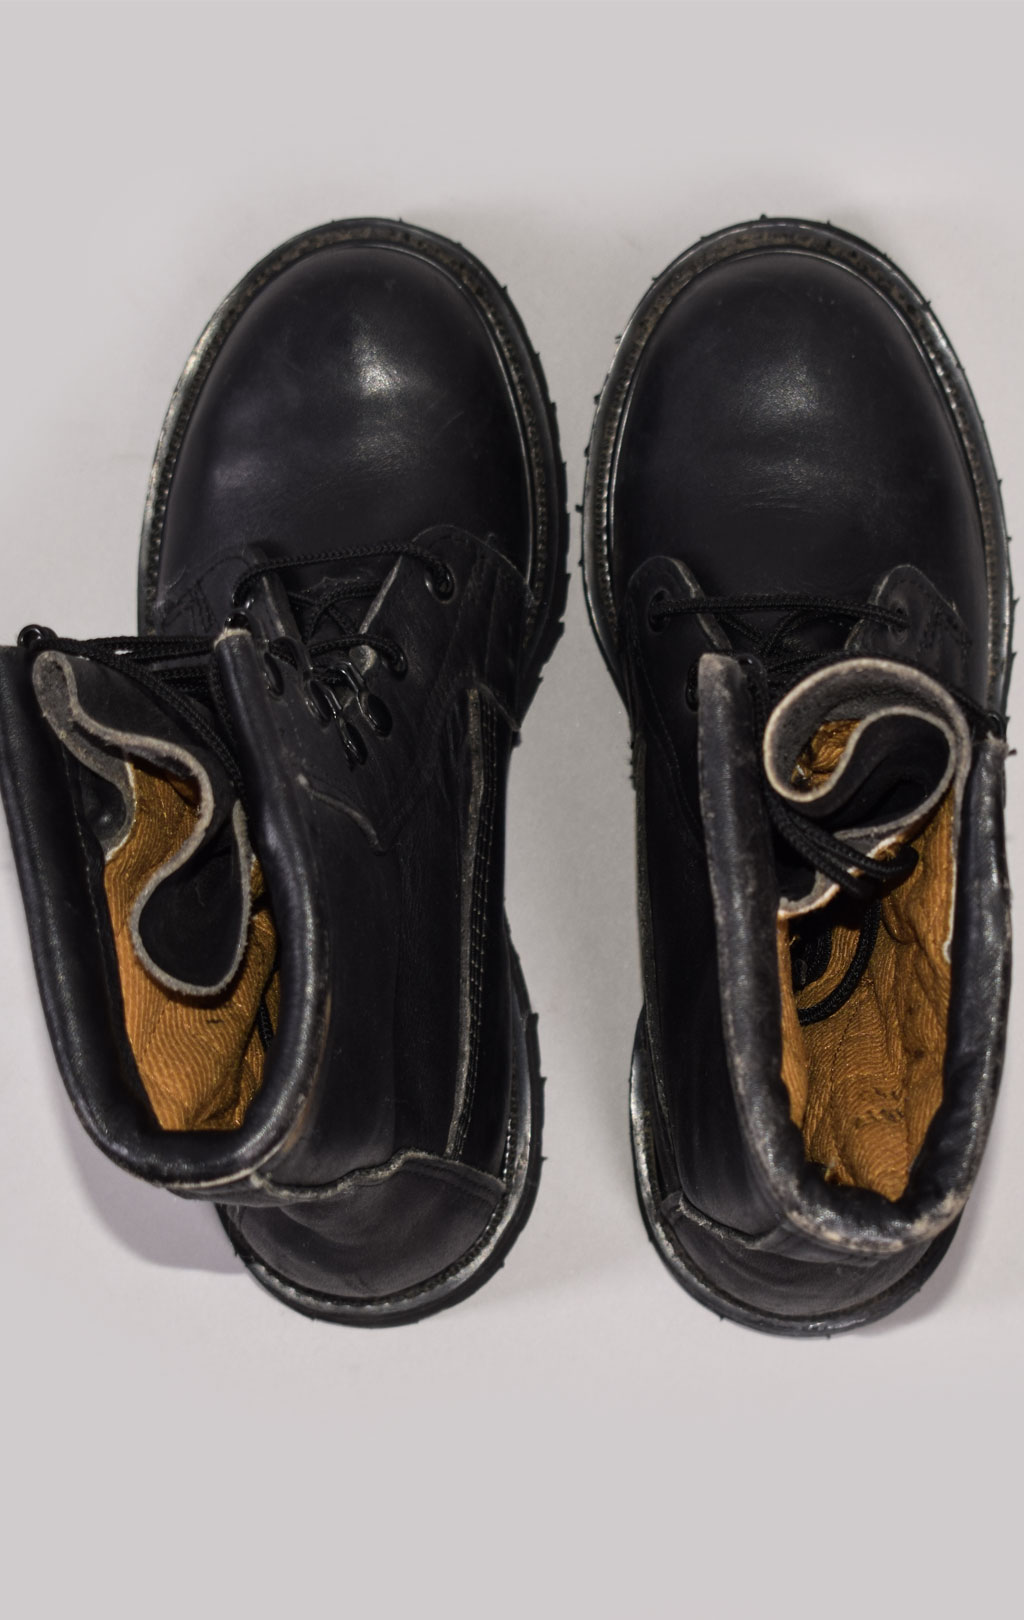 Женские ботинки-берцы Gore-Tex ICW USGI black США